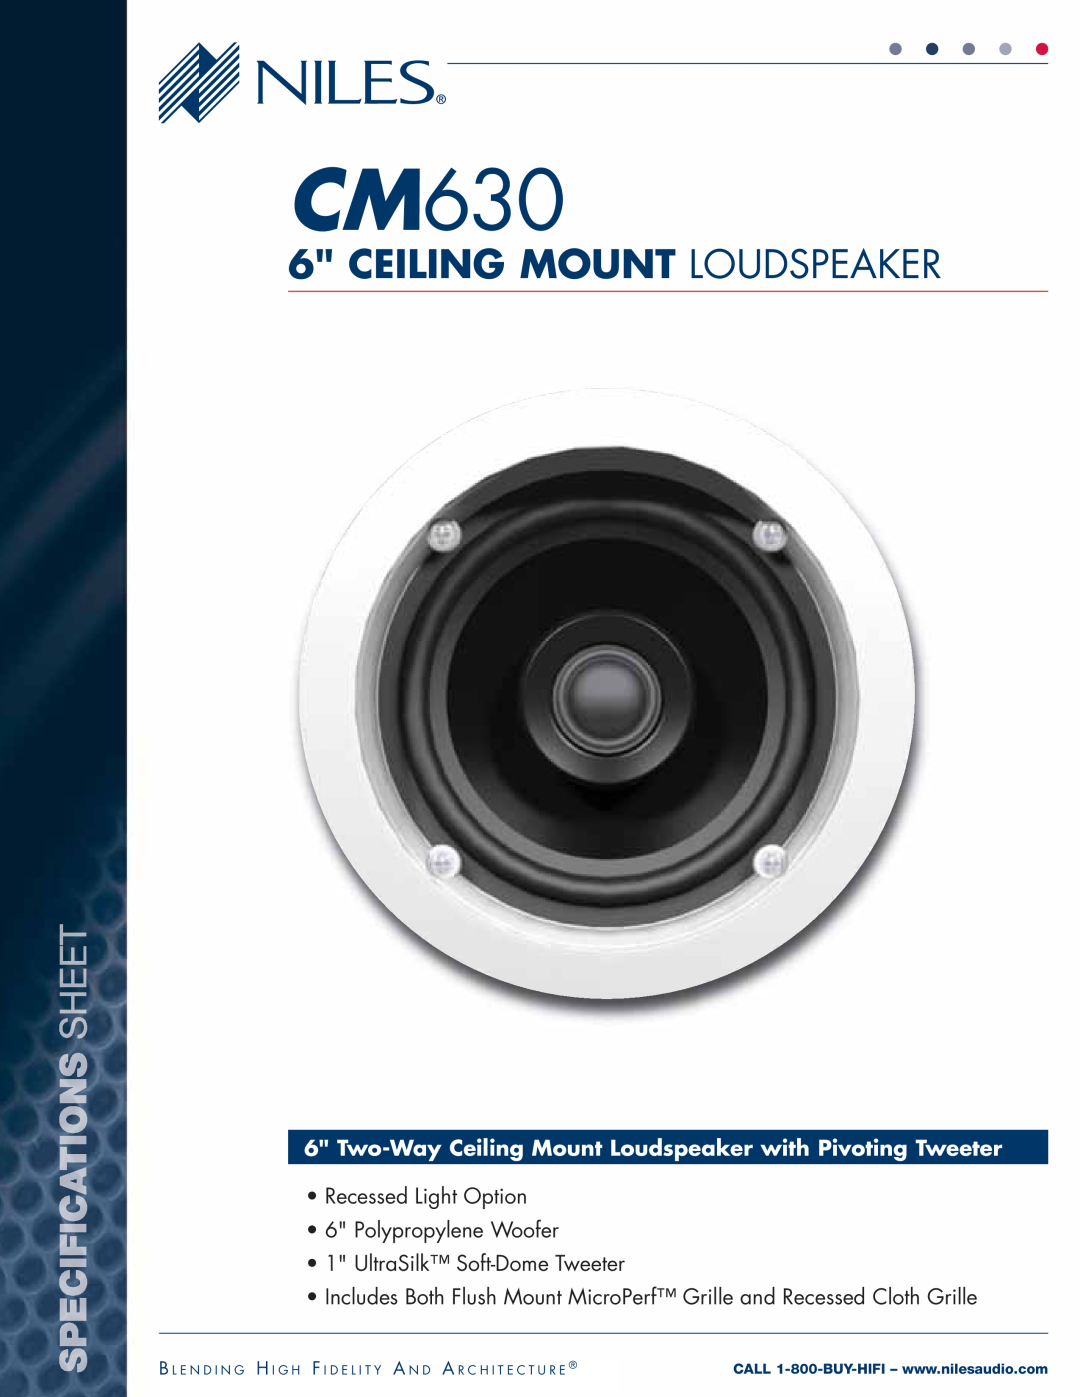 Niles Audio SR14 manual CM630, Ceiling Mount Loudspeaker, Recessed Light Option 6 Polypropylene Woofer 